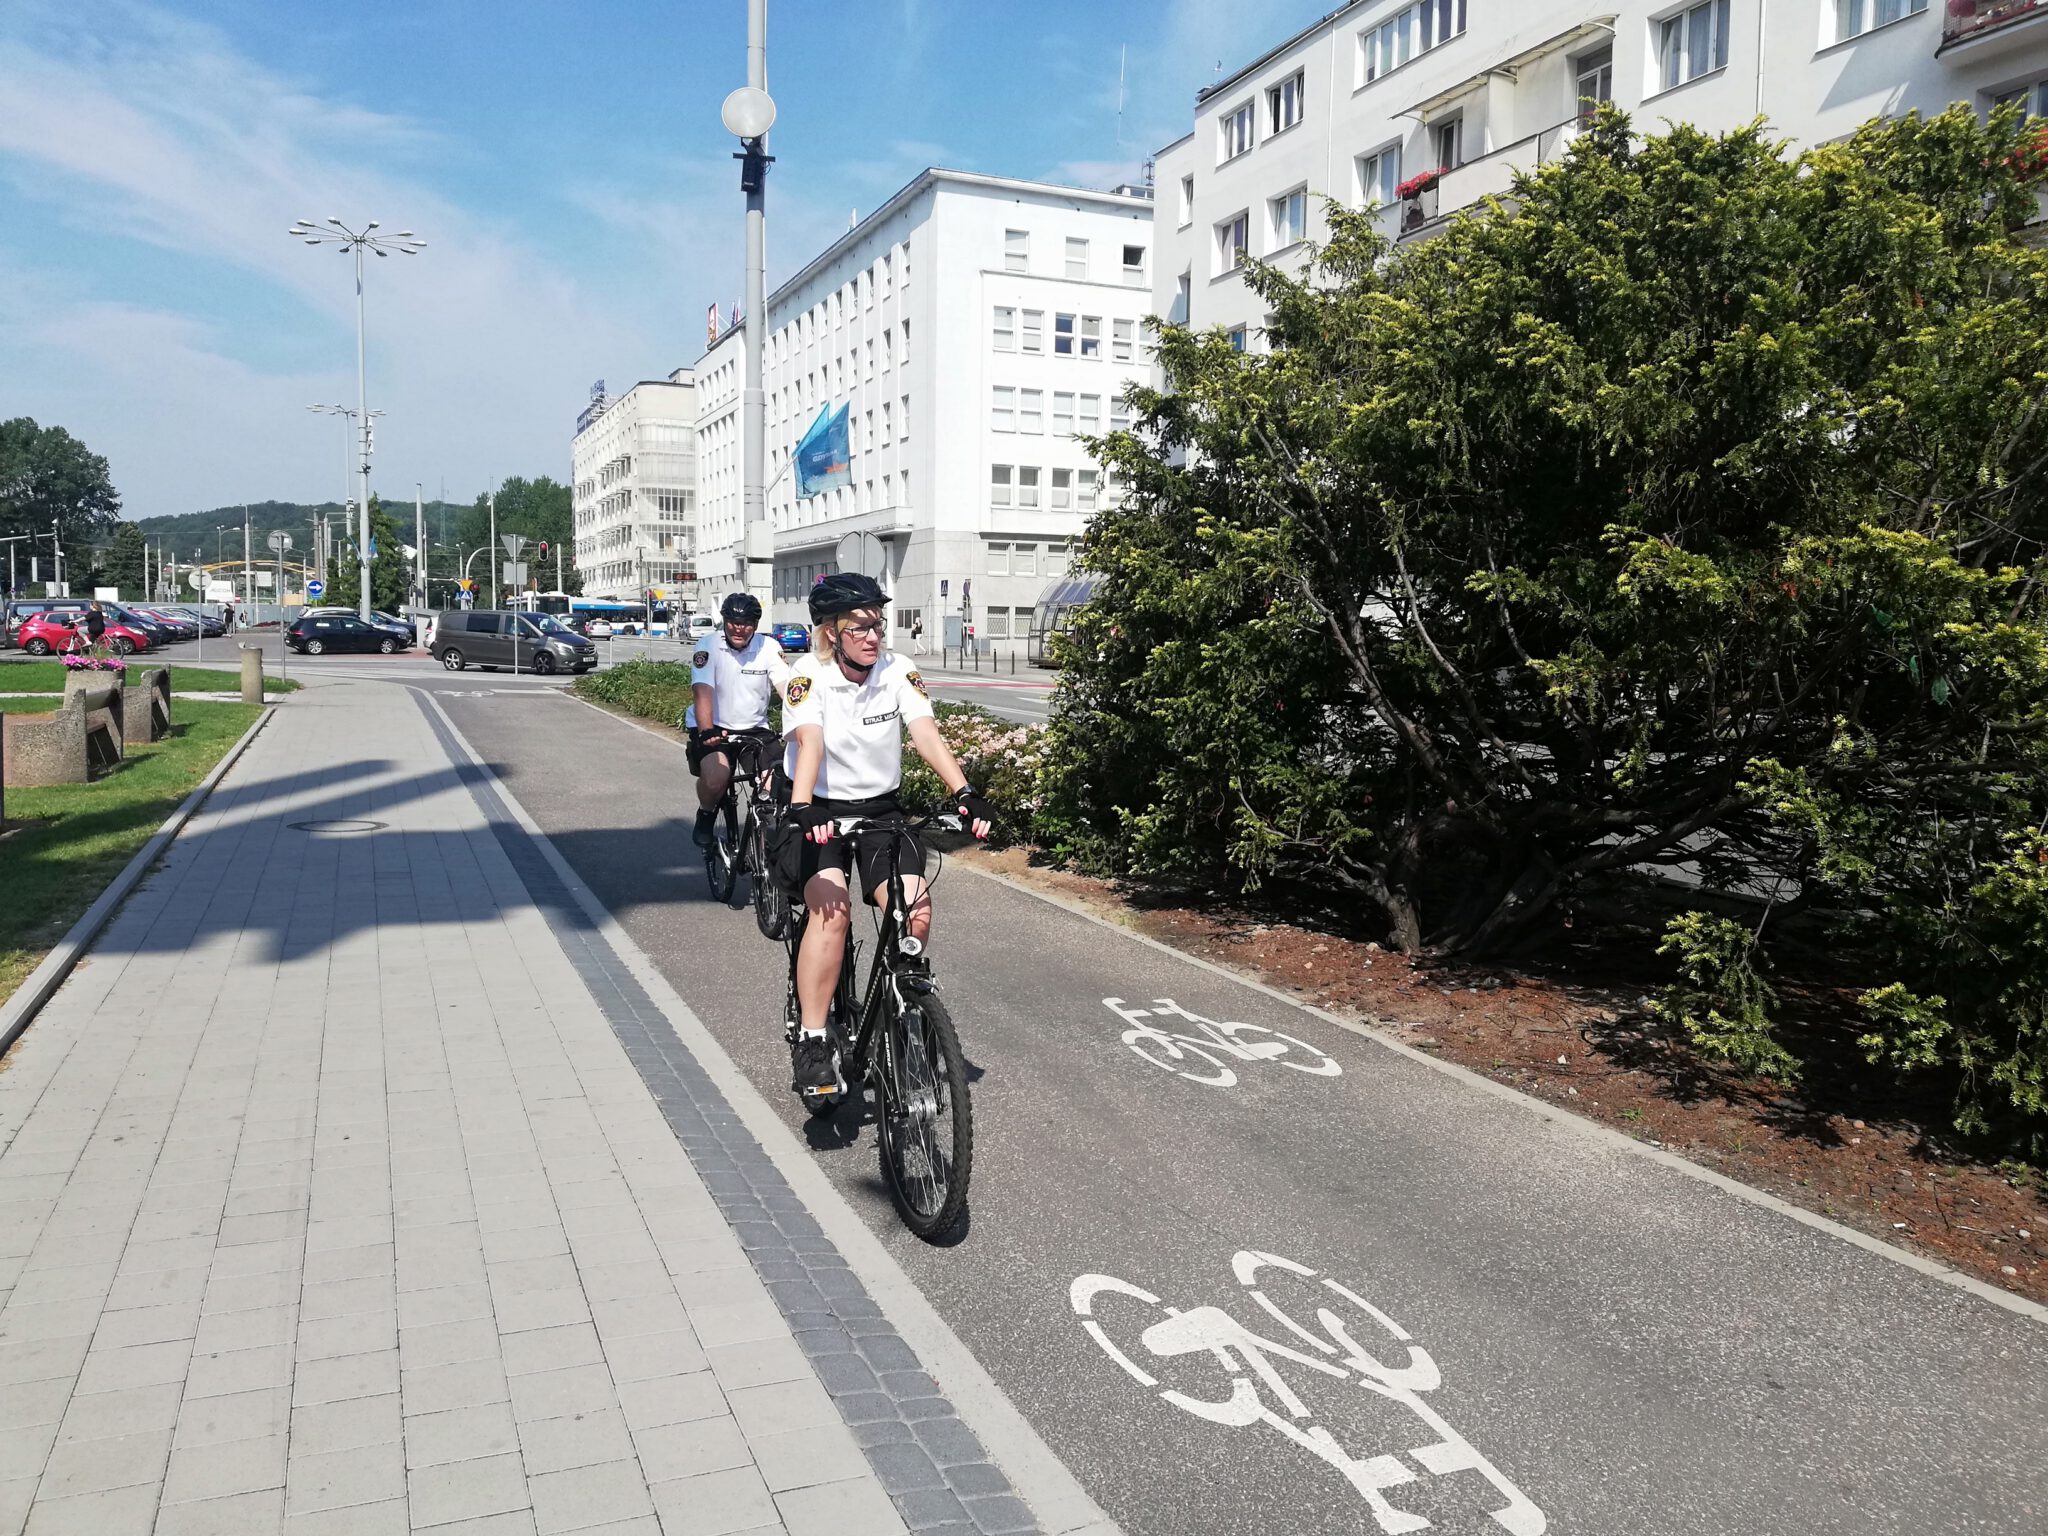 Strażnicy miejscy takze przesiadają się na służbowe rowery, fot. Straż Miejska w Gdyni / archiwalne (2020)